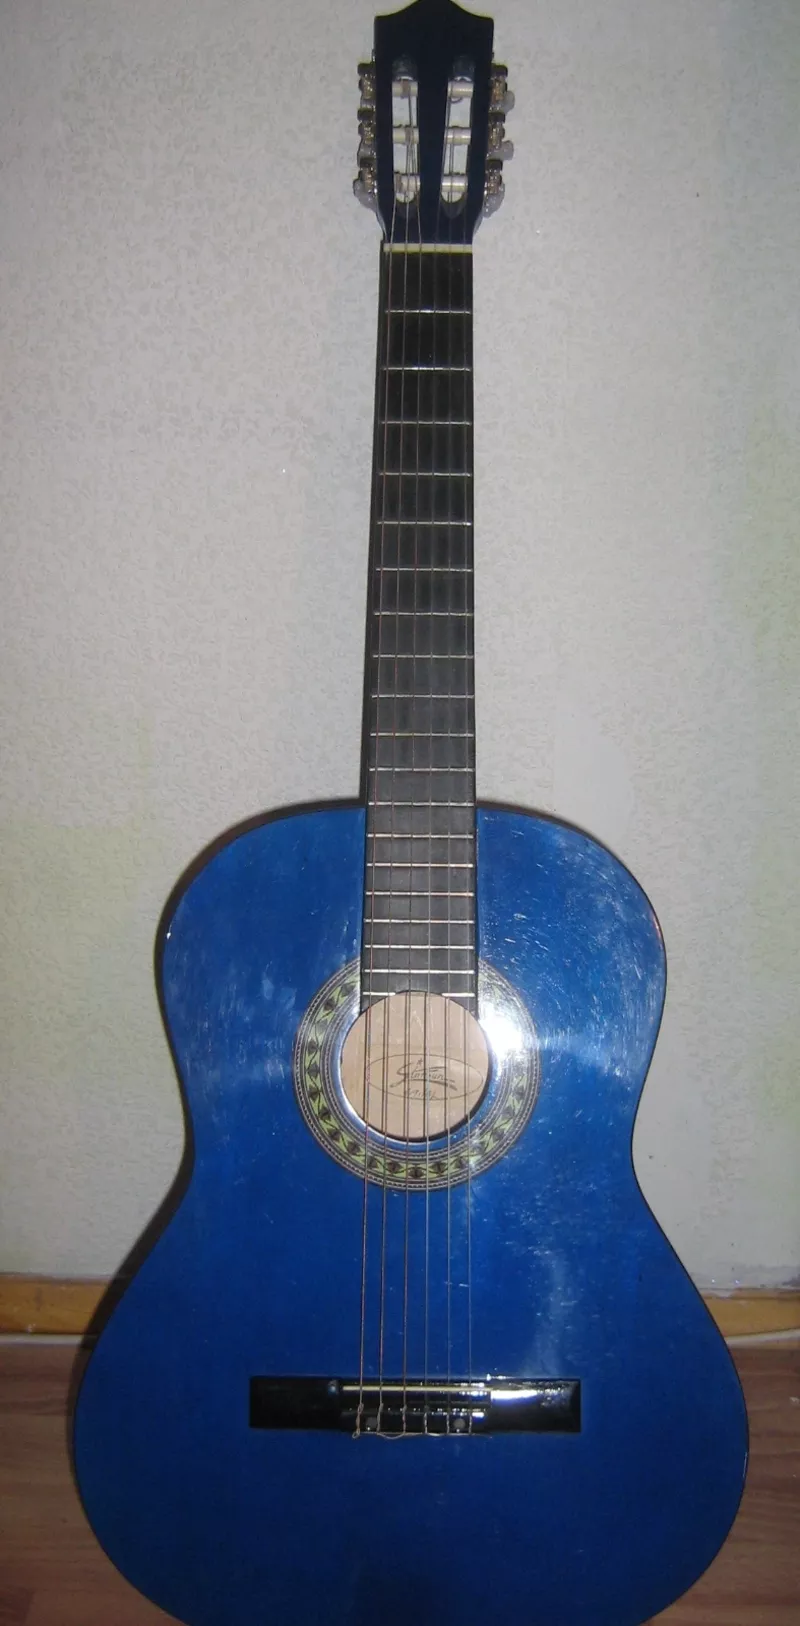 Продам классическую гитару фирмы StarSun!